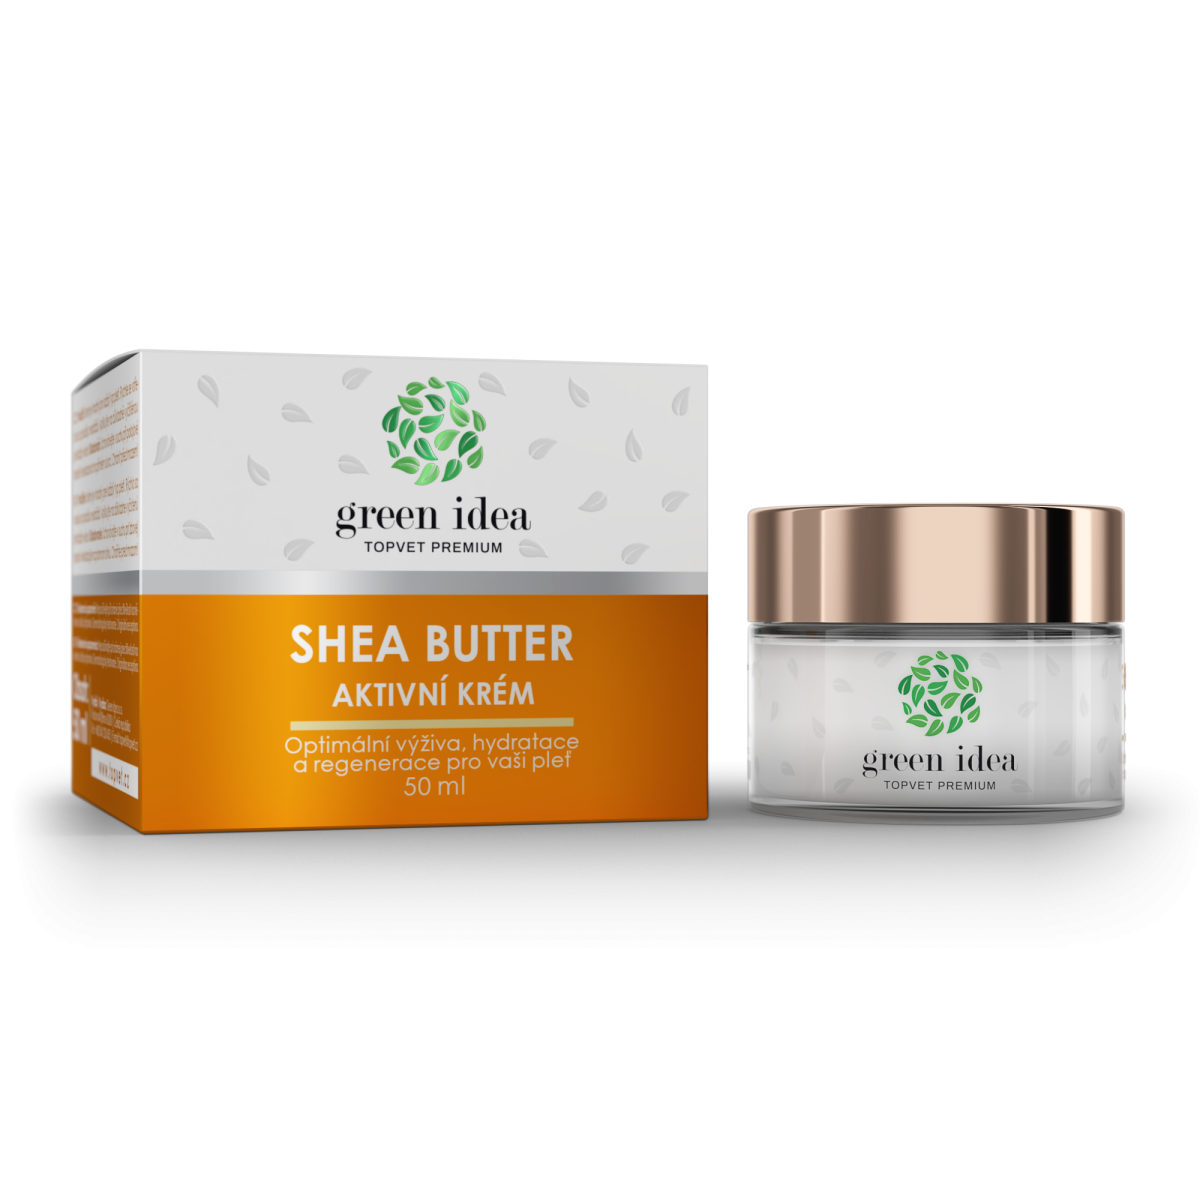 Shea butter aktivní krém 50ml